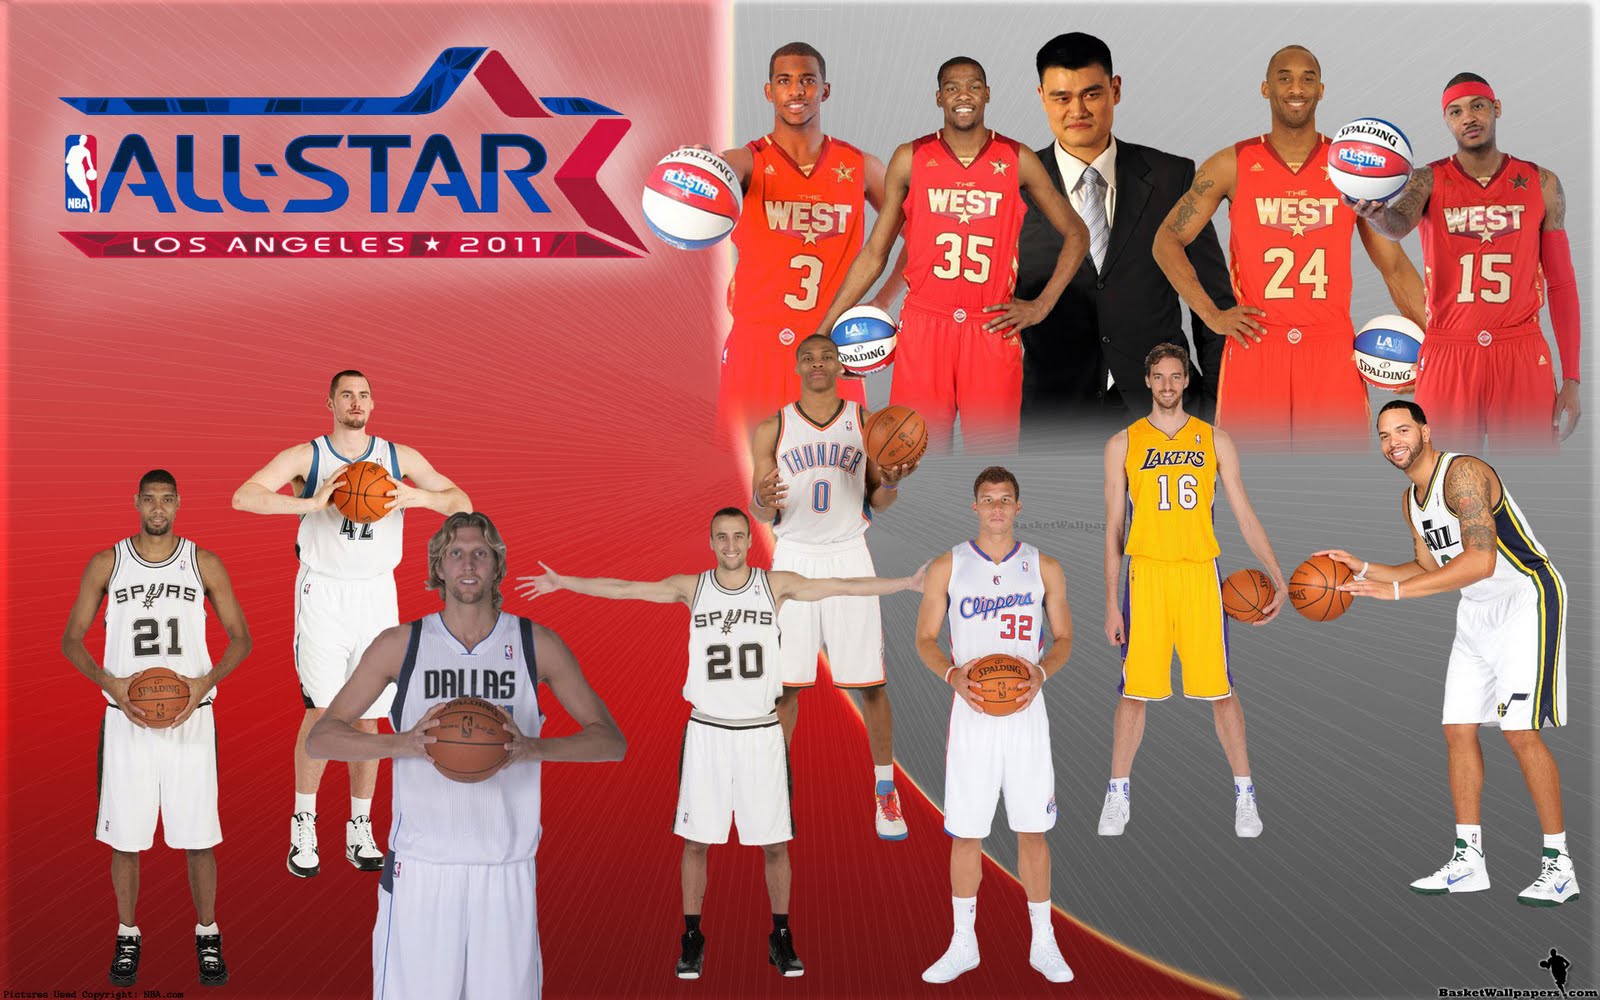 http://4.bp.blogspot.com/-_I2ozKNTvB8/Tj7k443IOrI/AAAAAAAABTY/nfN-6-_R5No/s1600/NBA-All-Star-2011-Western-Conference-Team-Widescreen-Wallpaper.jpg